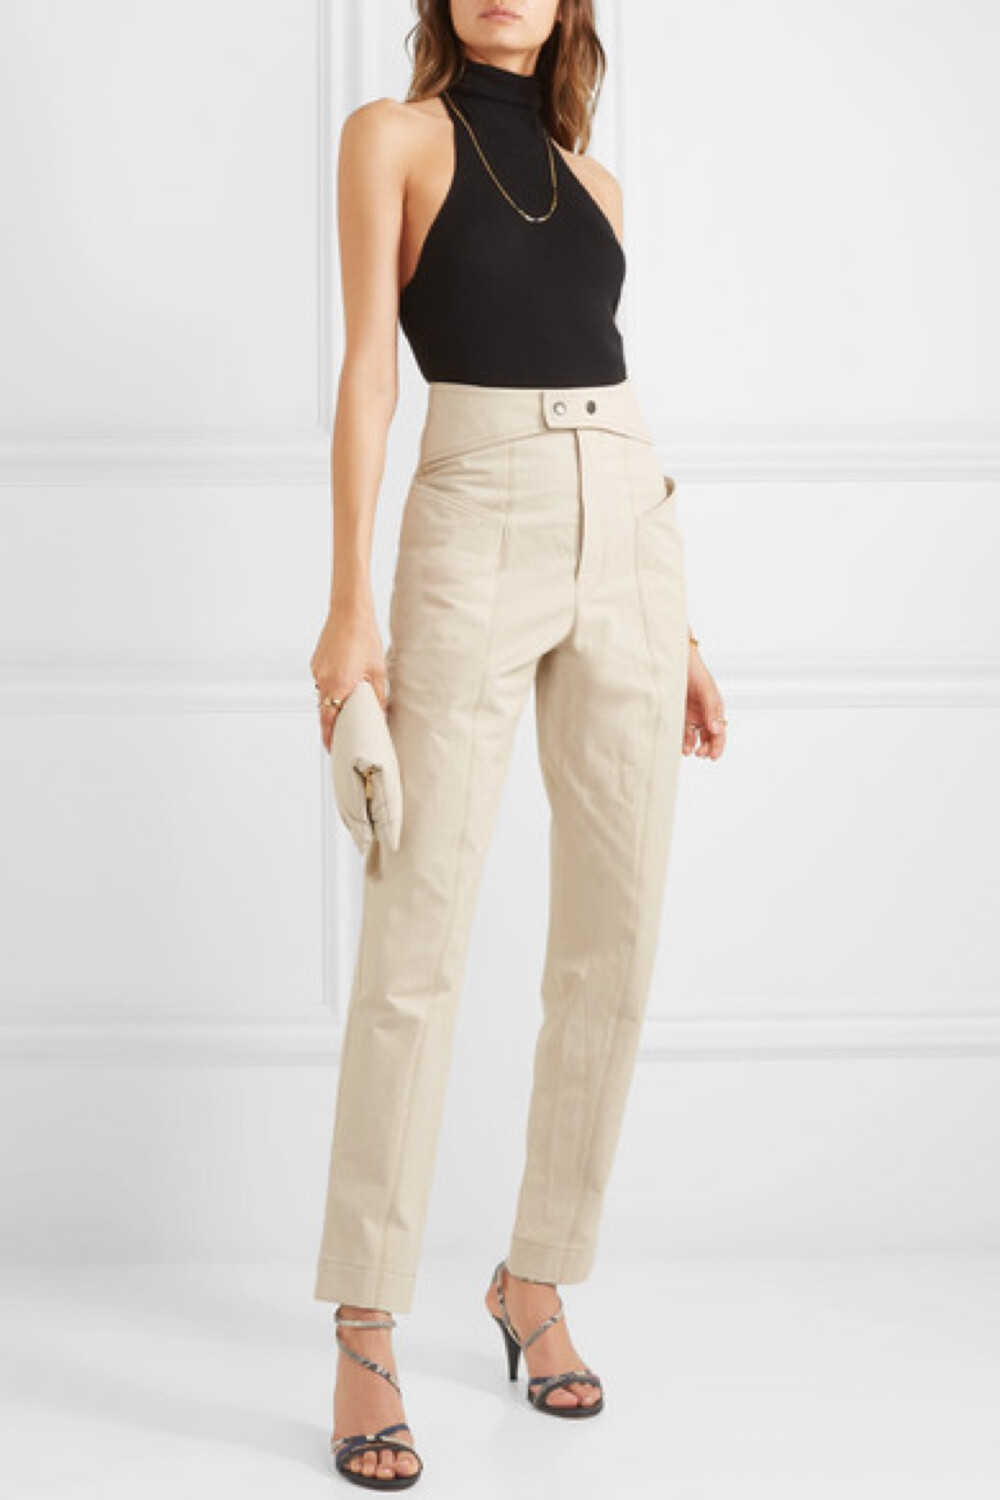 Isabel Marant 称品牌 2019 早秋系列精致帅气，这款 “Lixy” 锥形裤即成功诠释了这一季的主题。单品以纯棉斜纹布制成，正面设有工装风裤兜。建议将毛衣或连体紧身衣的下摆束入腰间，来凸显其高腰腰头上的摁扣腰带细节。